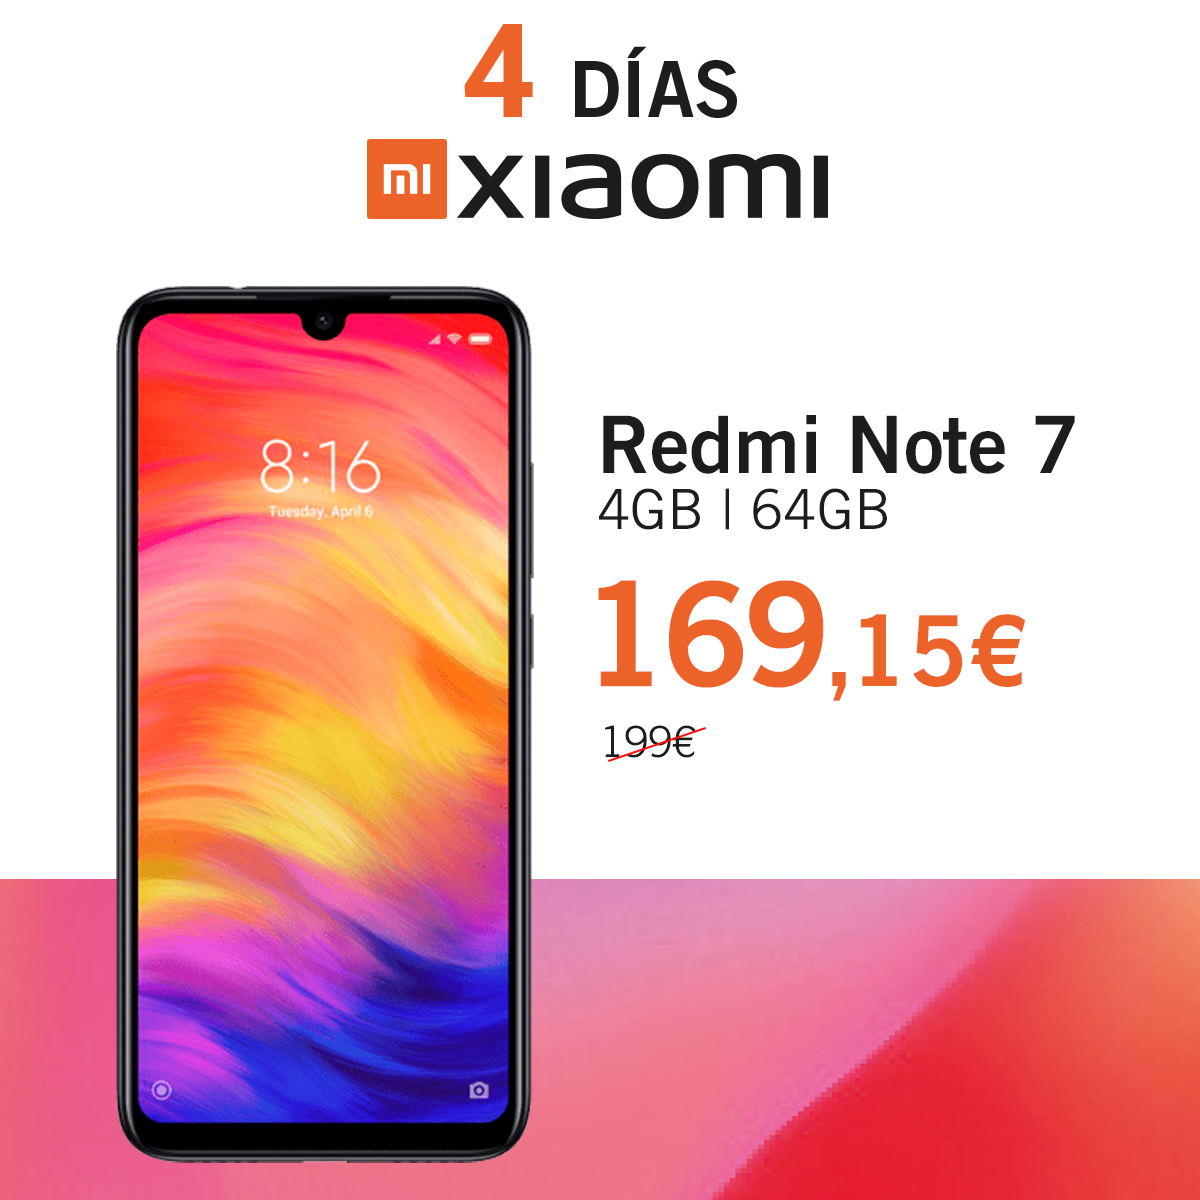 Redmi Note 7 Dias Xiaomi